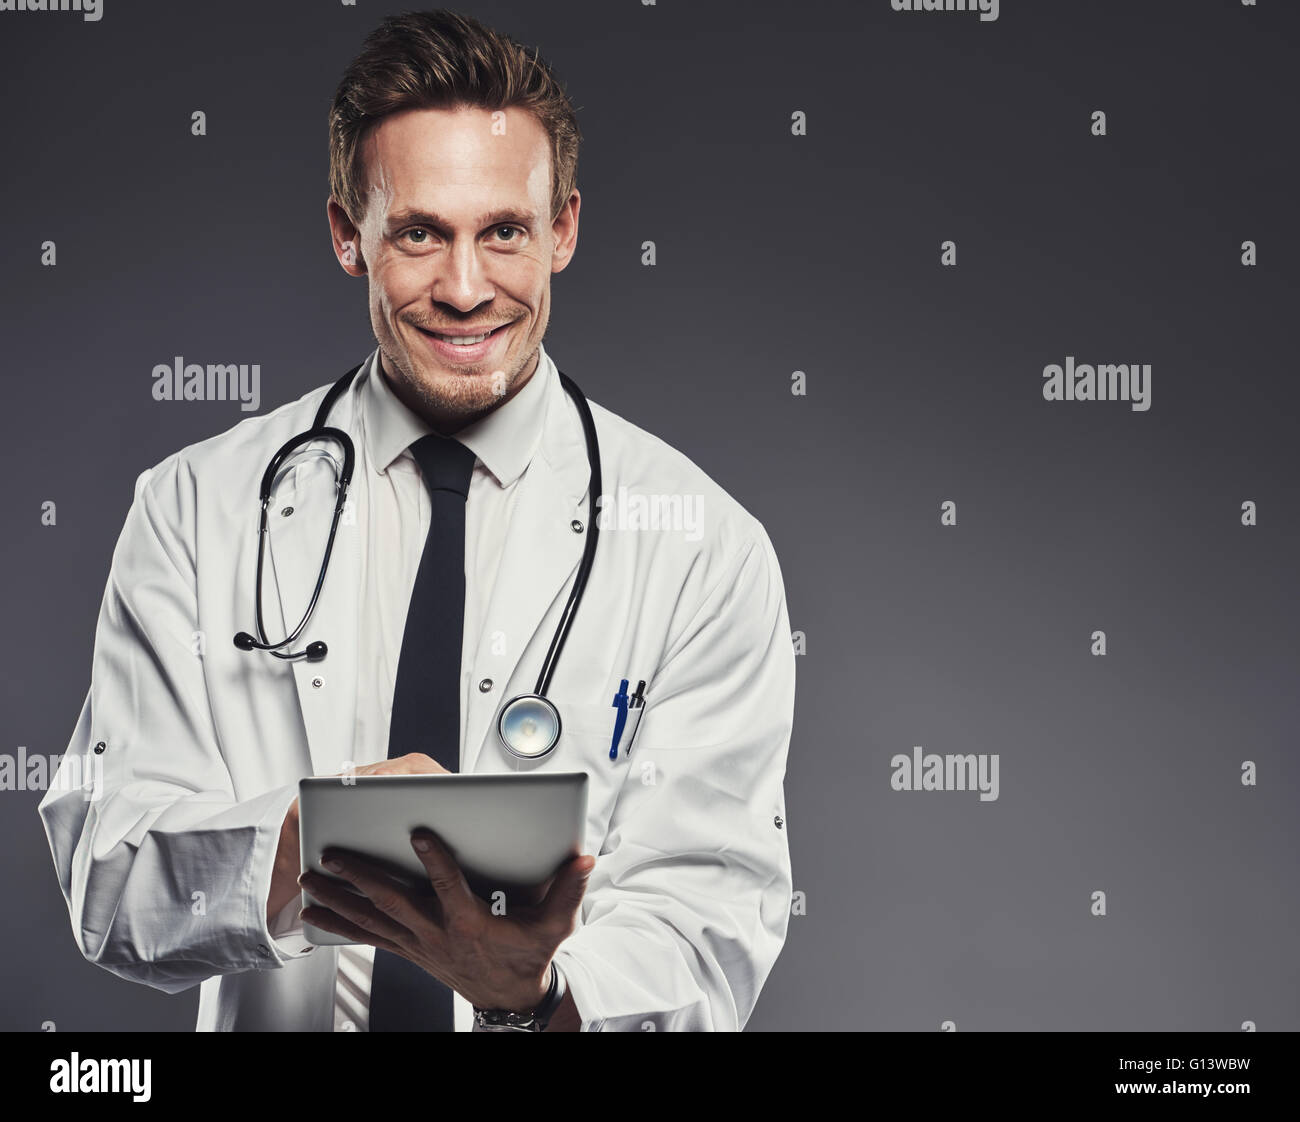 Smiling doctor with stethoscope et tablette portant sarrau blanc et cravate noire se dresse contre un fond sombre Banque D'Images